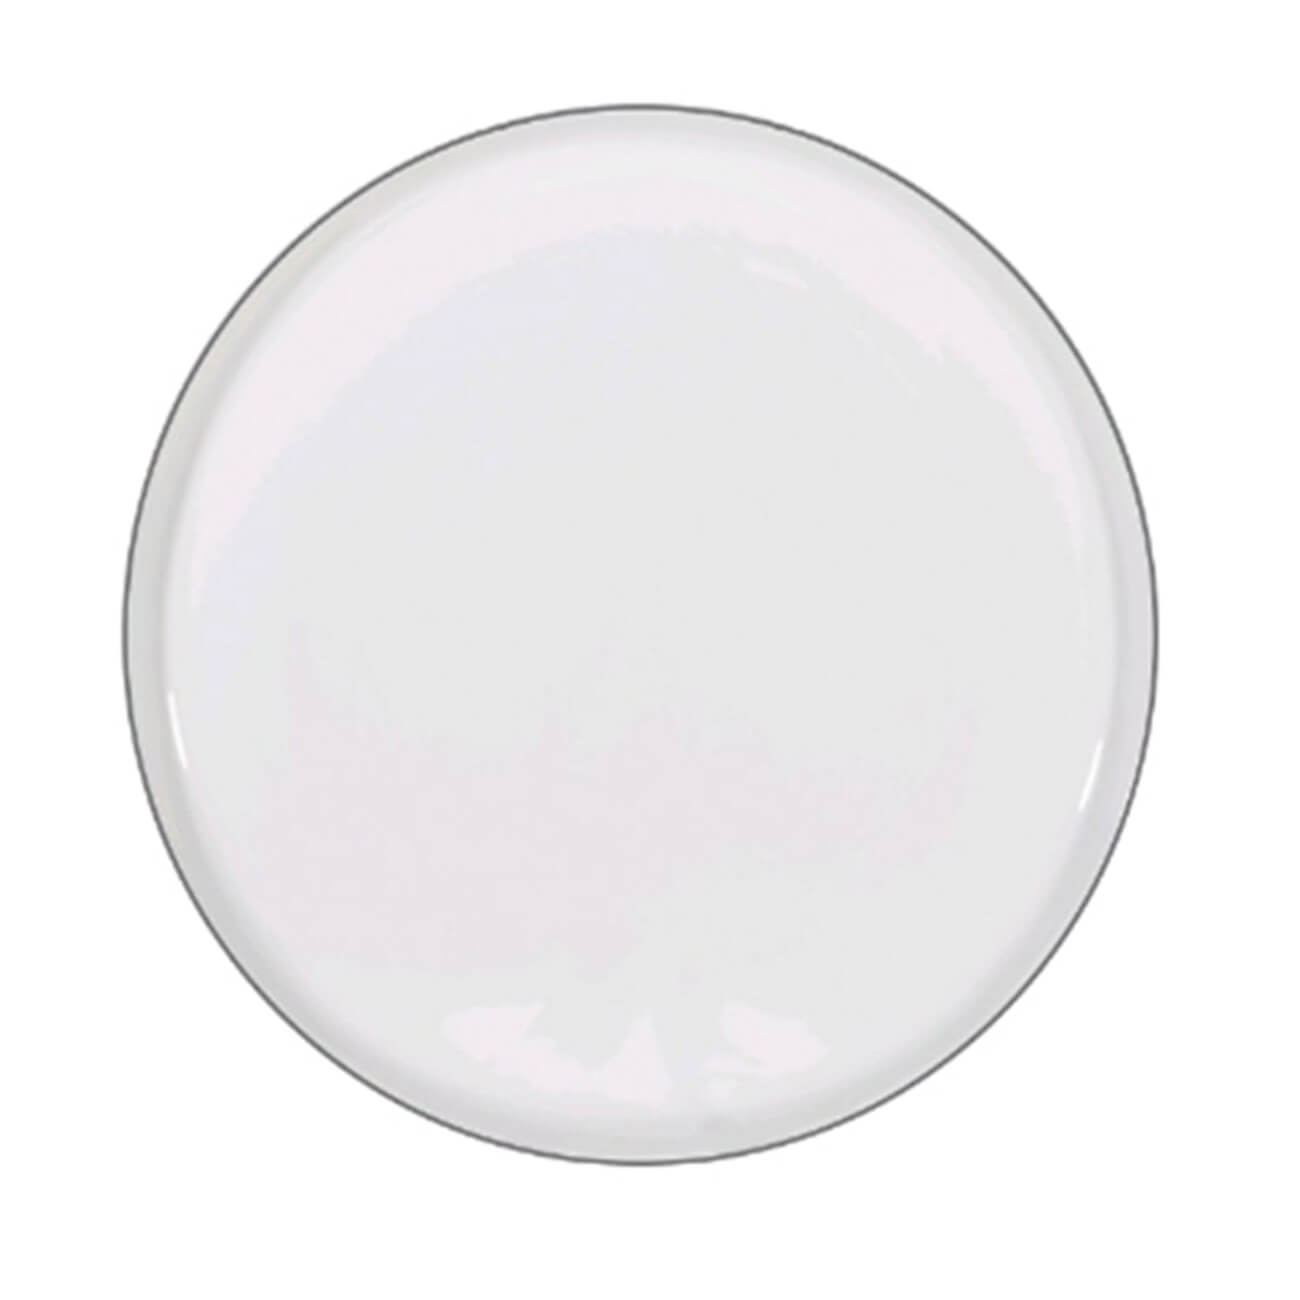 Тарелка десертная, 20 см, 2 шт, фарфор F, белая, Ideal silver десертная ложка eurohouse